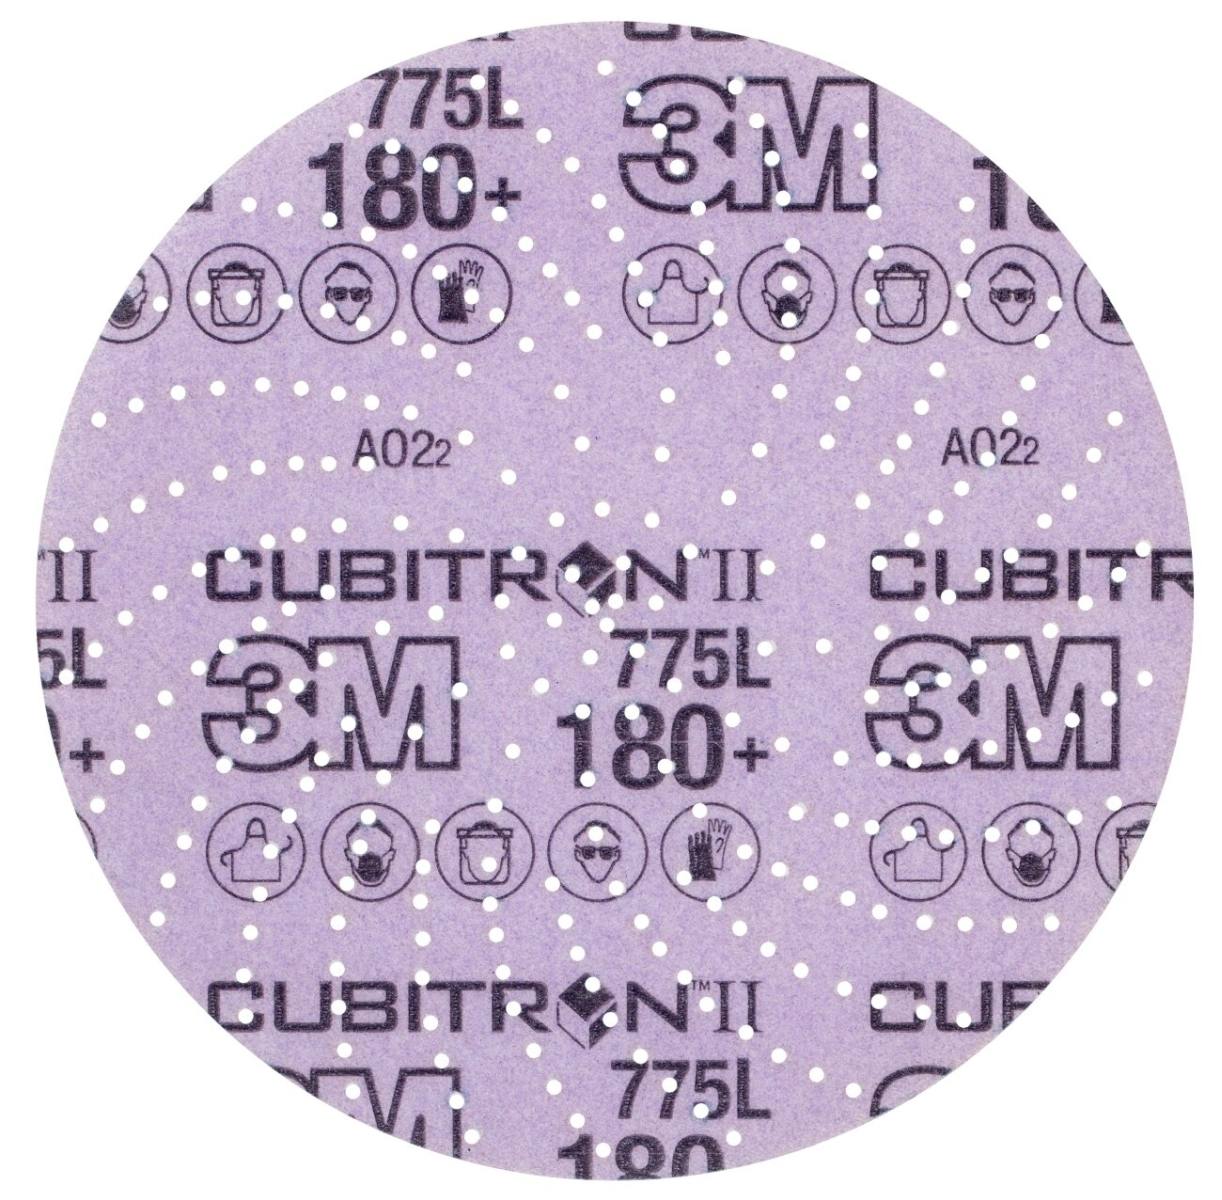 3M Cubitron II Hookit film disc 775L, 150 mm, 180 , multiforo #739401